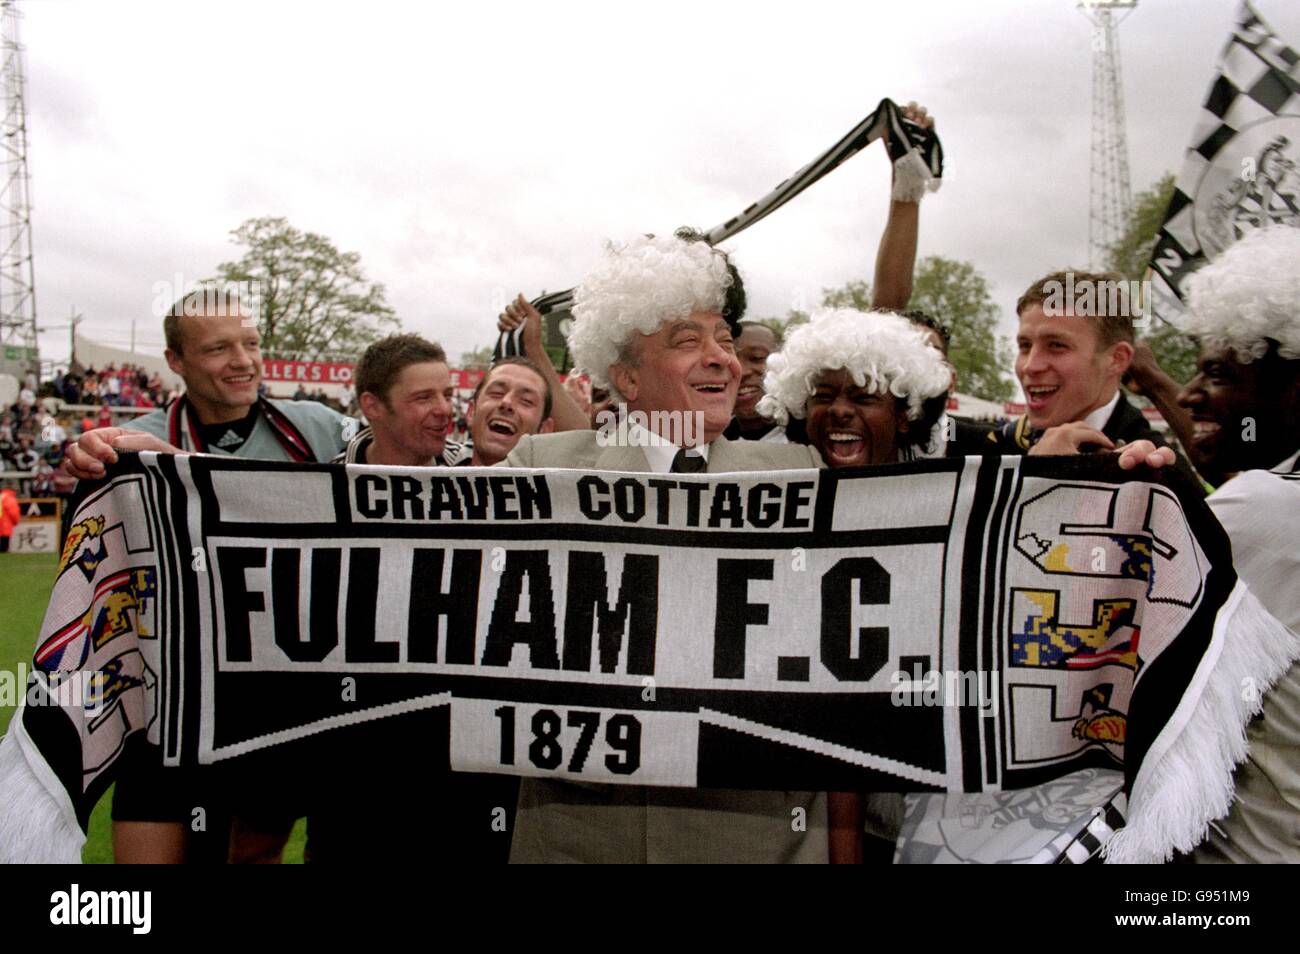 Le président de Fulham, Mohamed Al Fayed, célèbre avec son équipe après avoir remporté le deuxième championnat de division. Banque D'Images